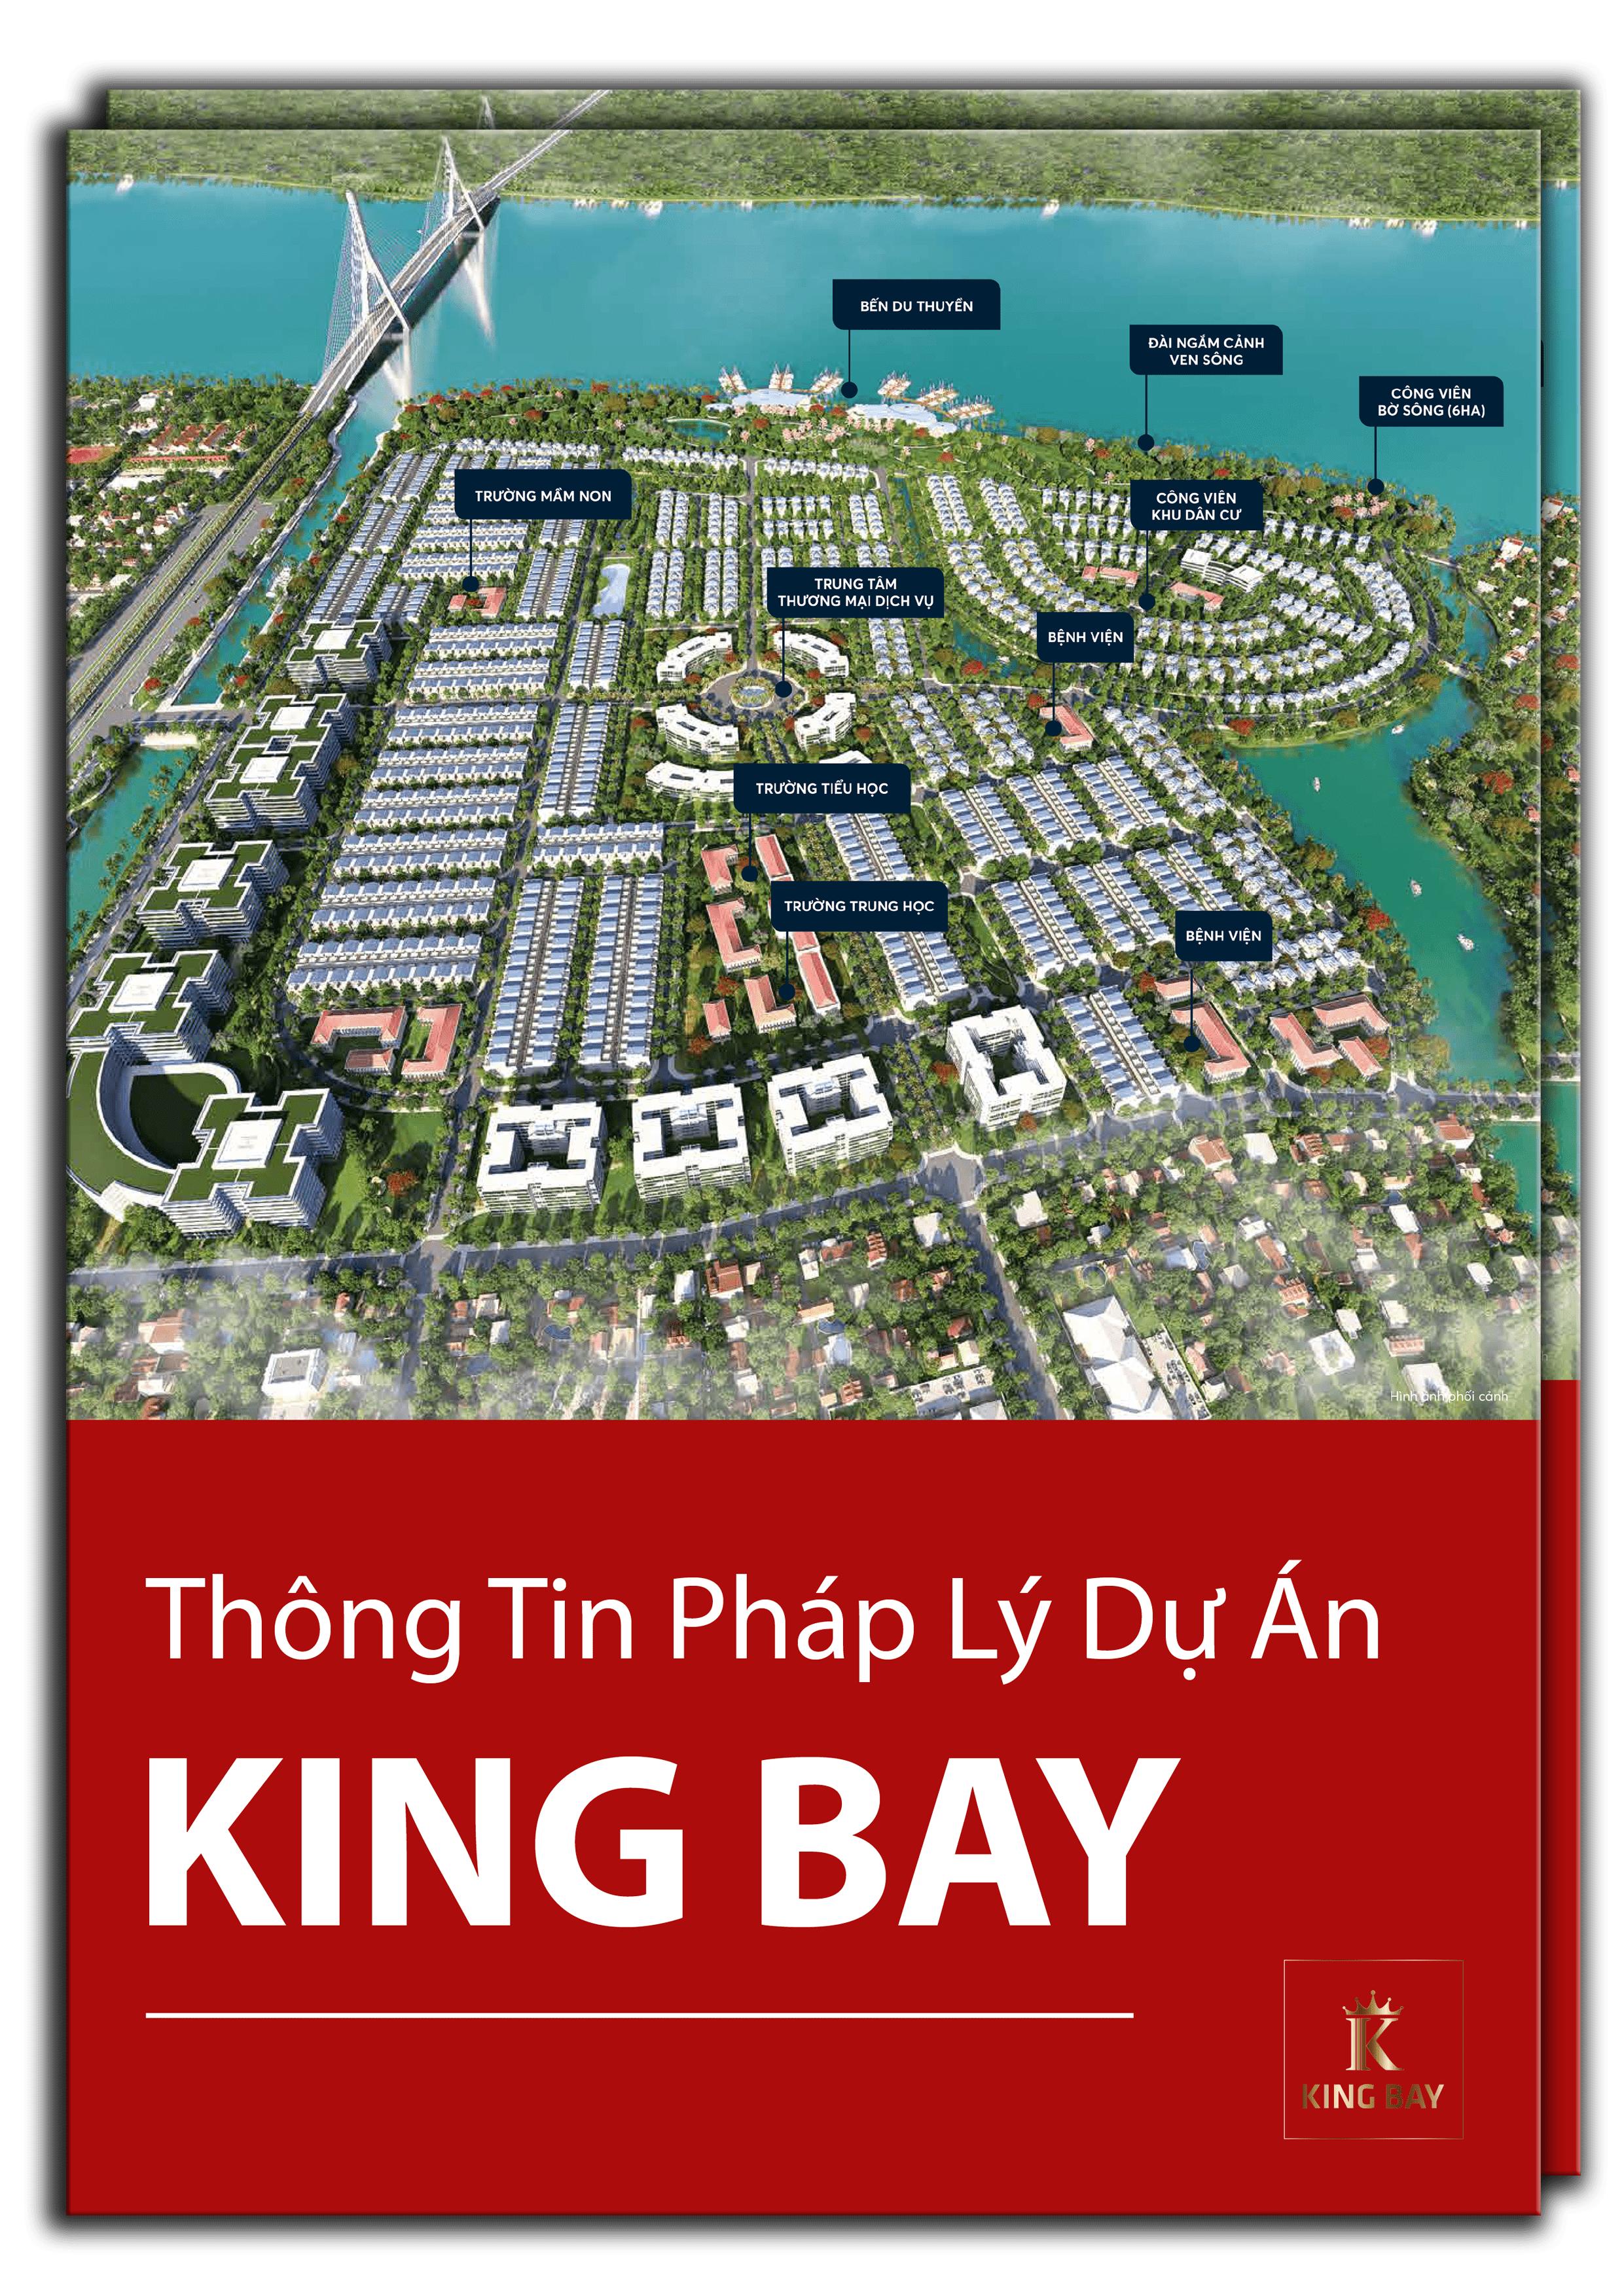 Pháp lý dự án King Bay